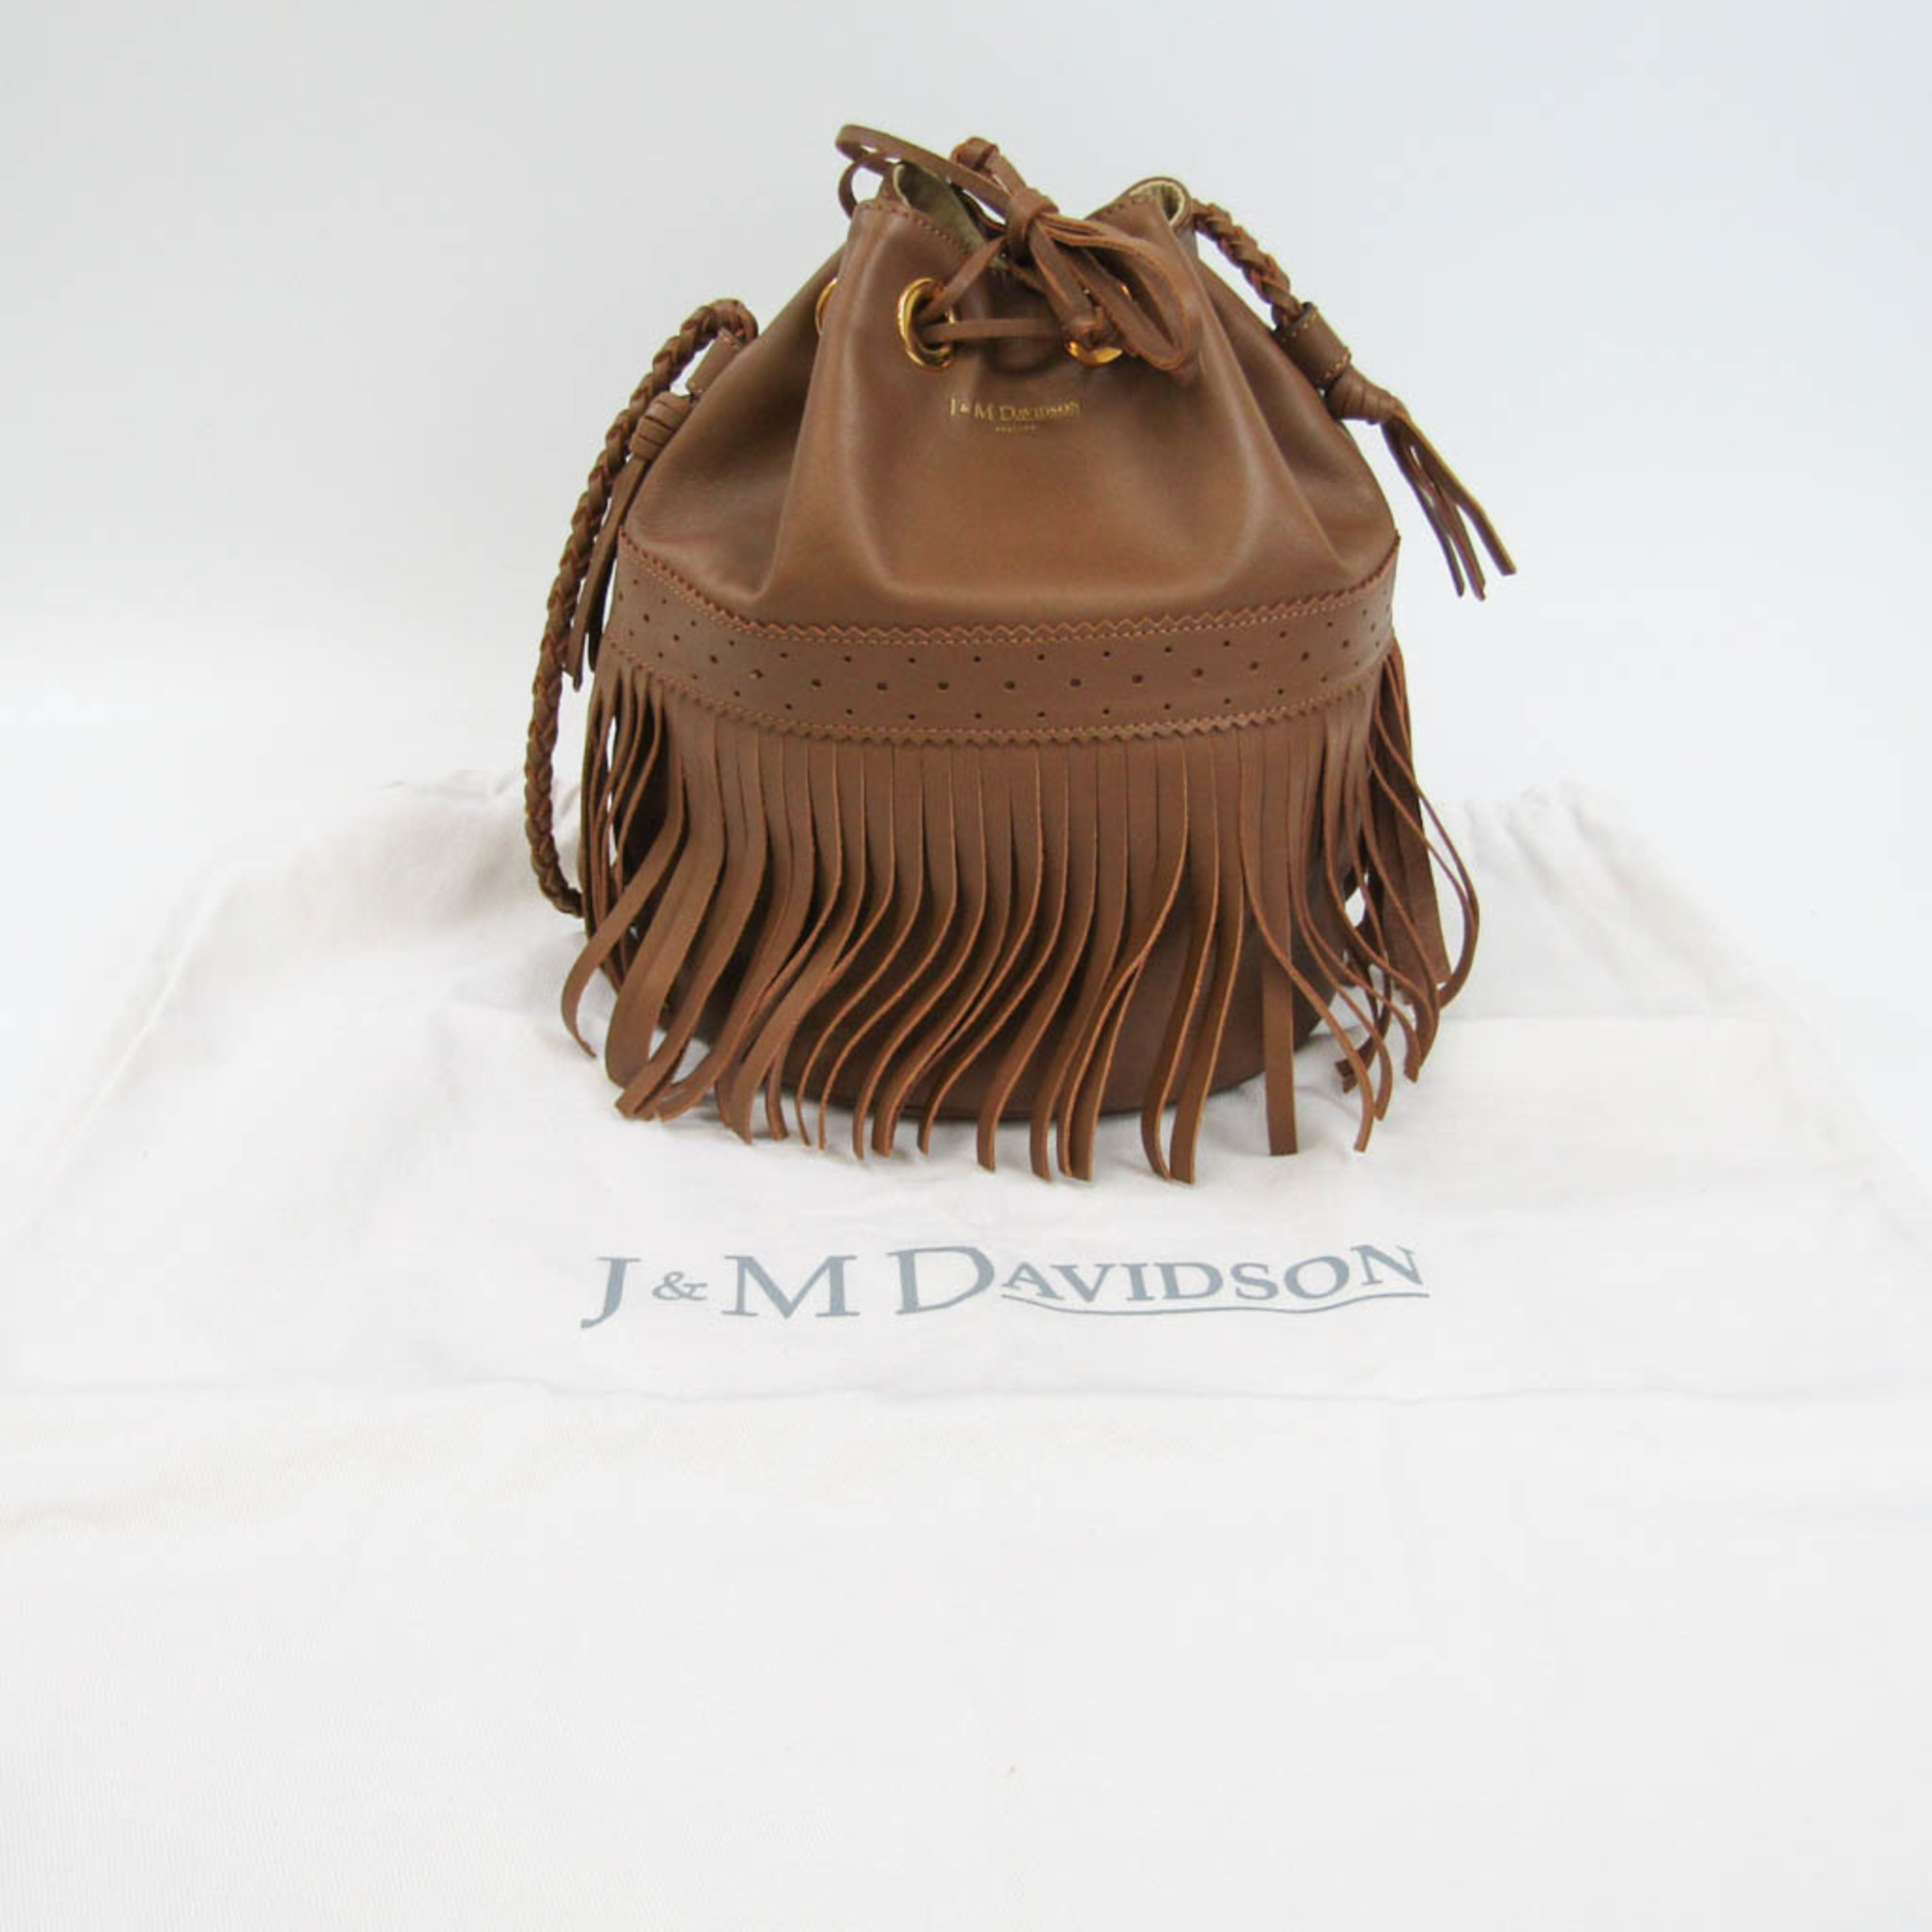 J&M Davidson Carnival Women's Leather Shoulder Bag Brown